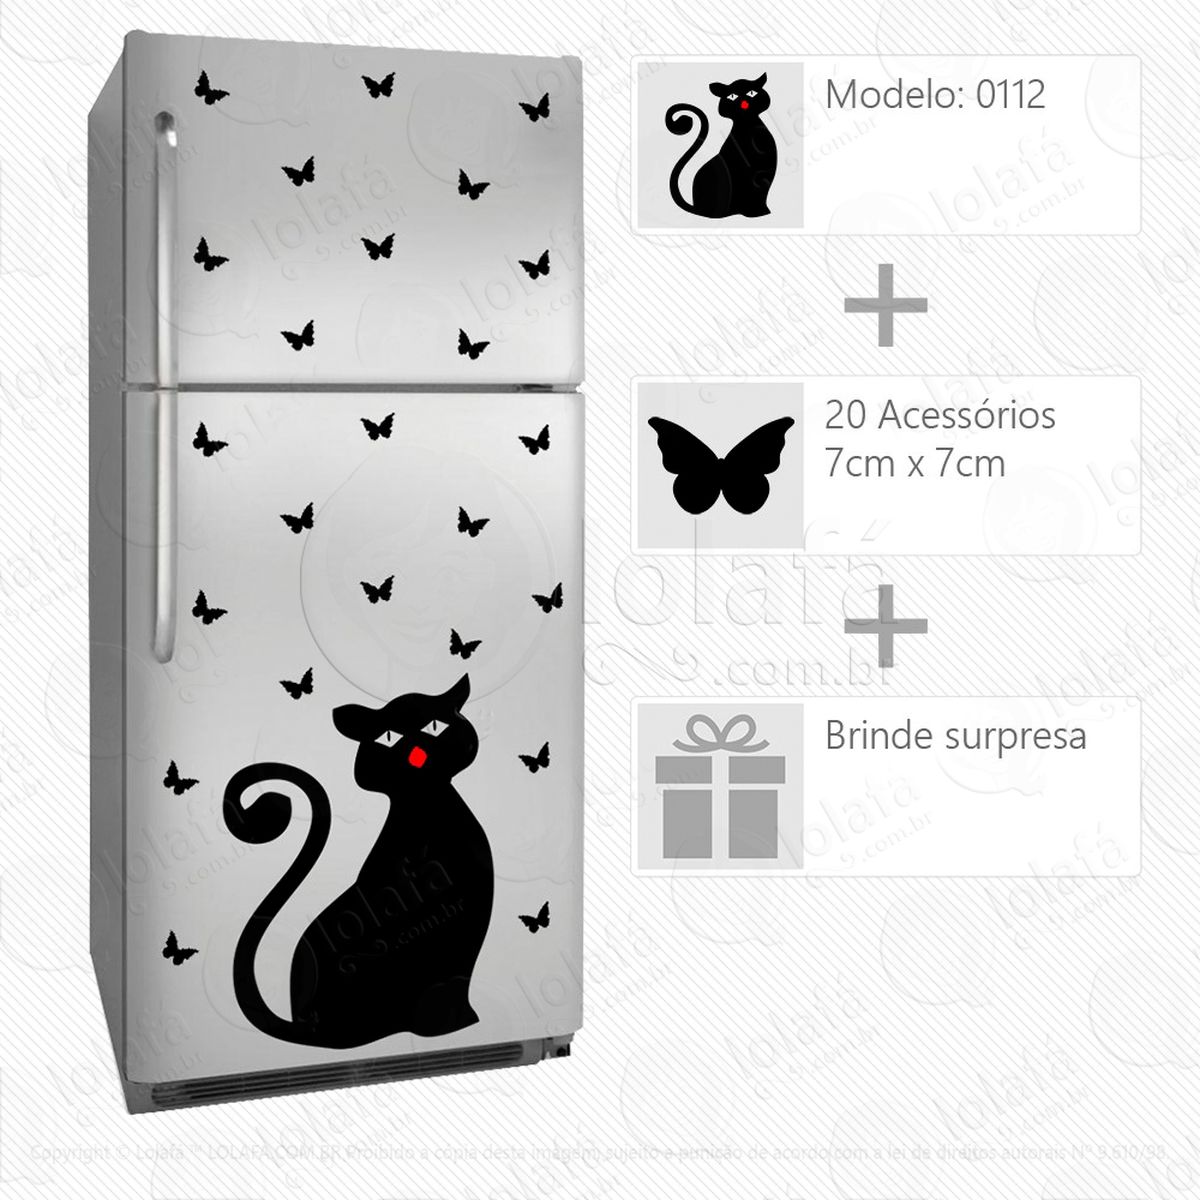 gato adesivo para geladeira e frigobar - mod:112